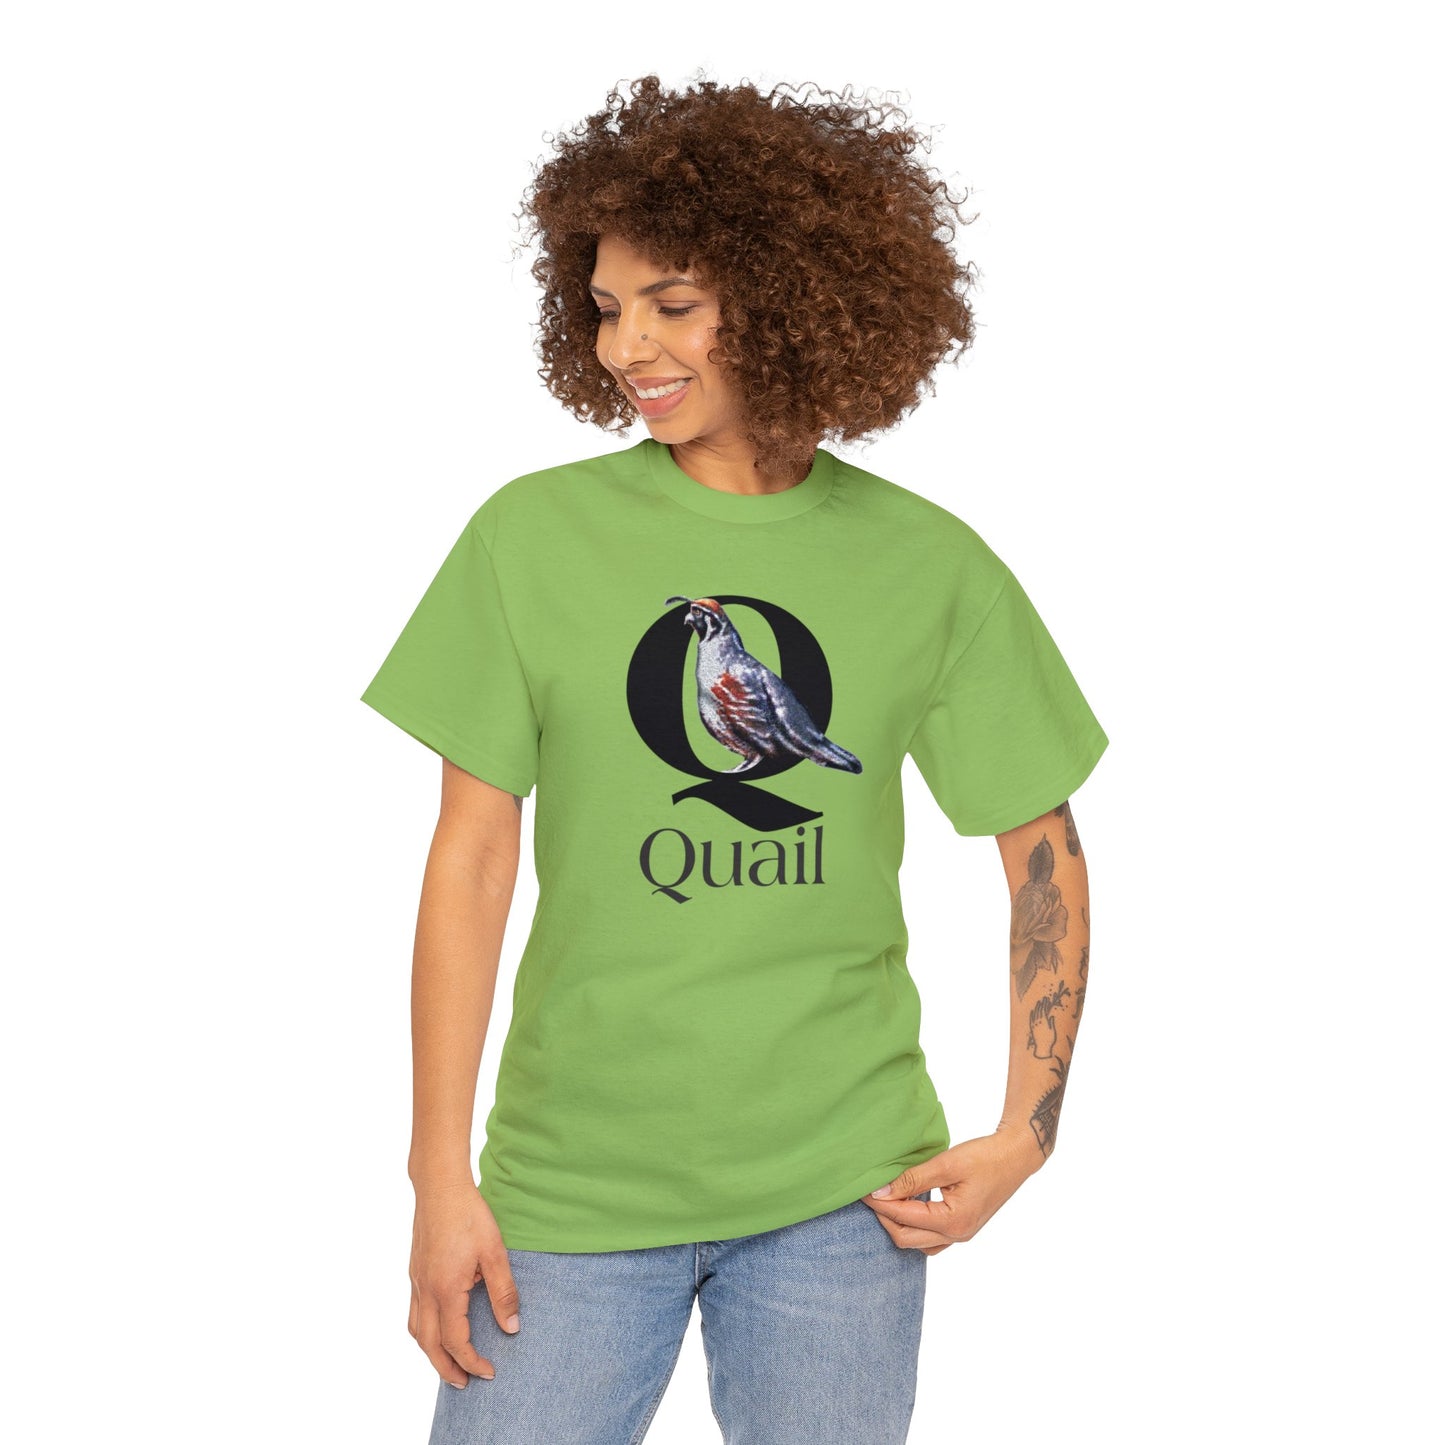 Q is for Quail t-shirt, Quail Drawing T-Shirt, Quail animal t-shirt, animal alphabet Q, animal